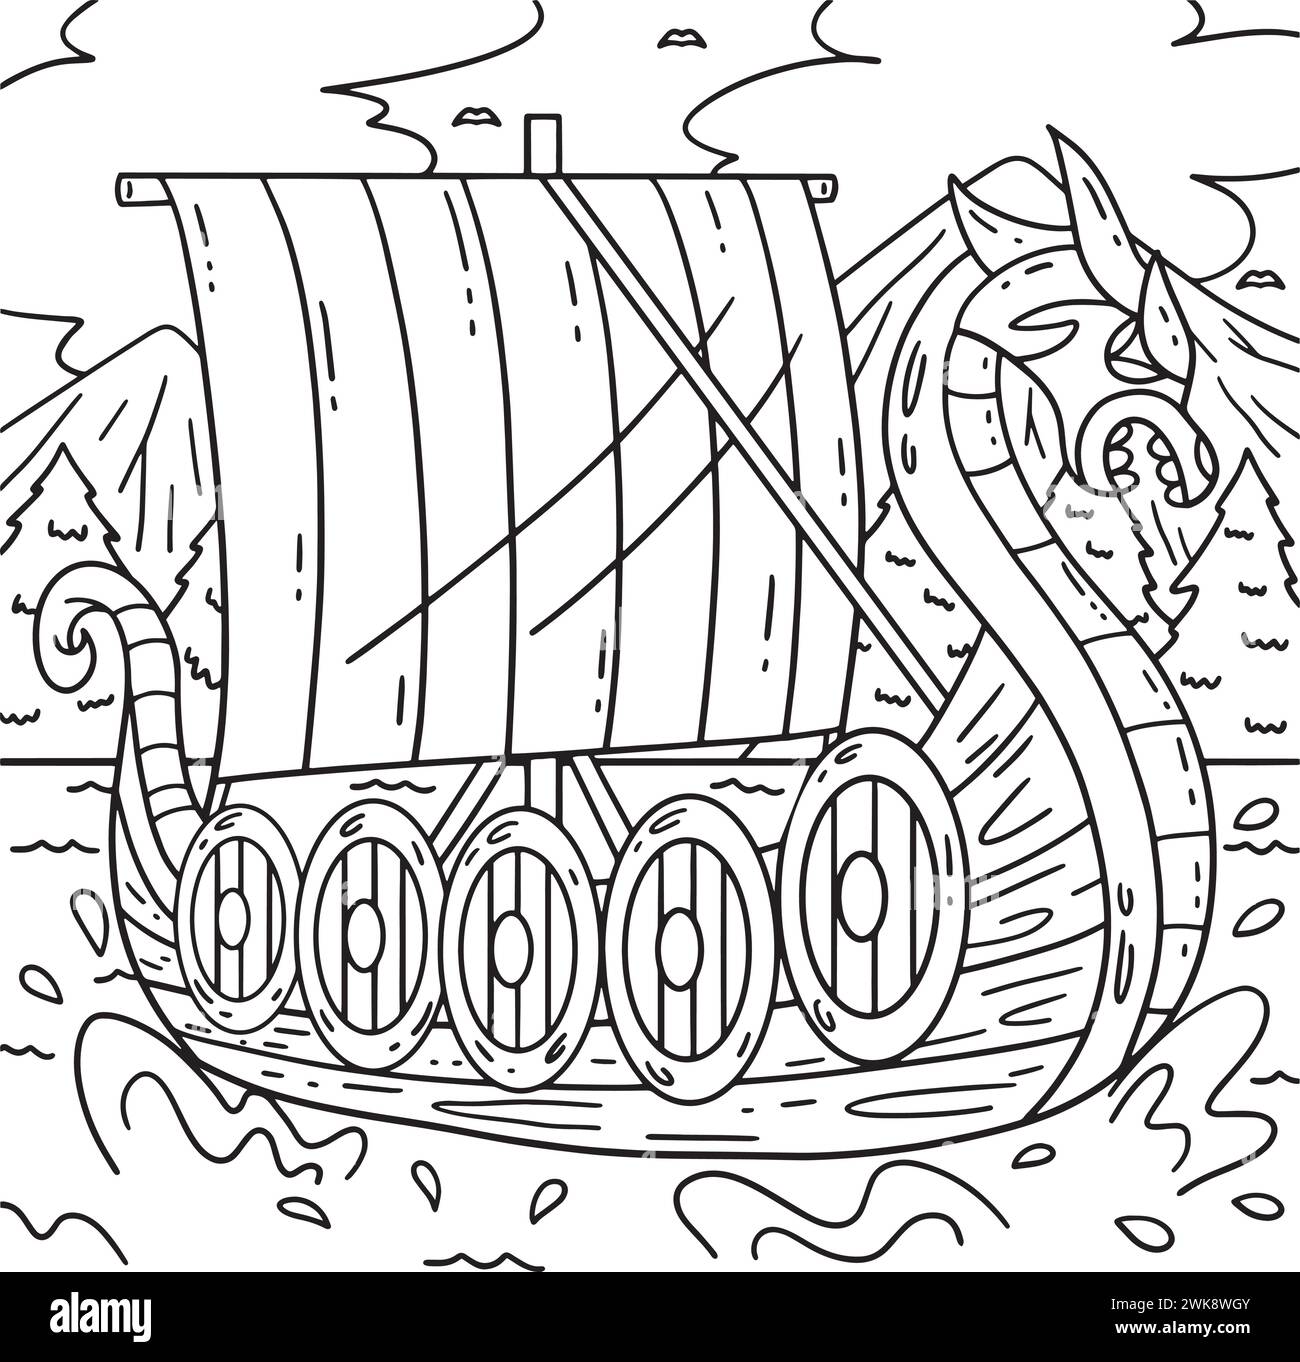 Pagina dei colori della nave vichinga per bambini Illustrazione Vettoriale